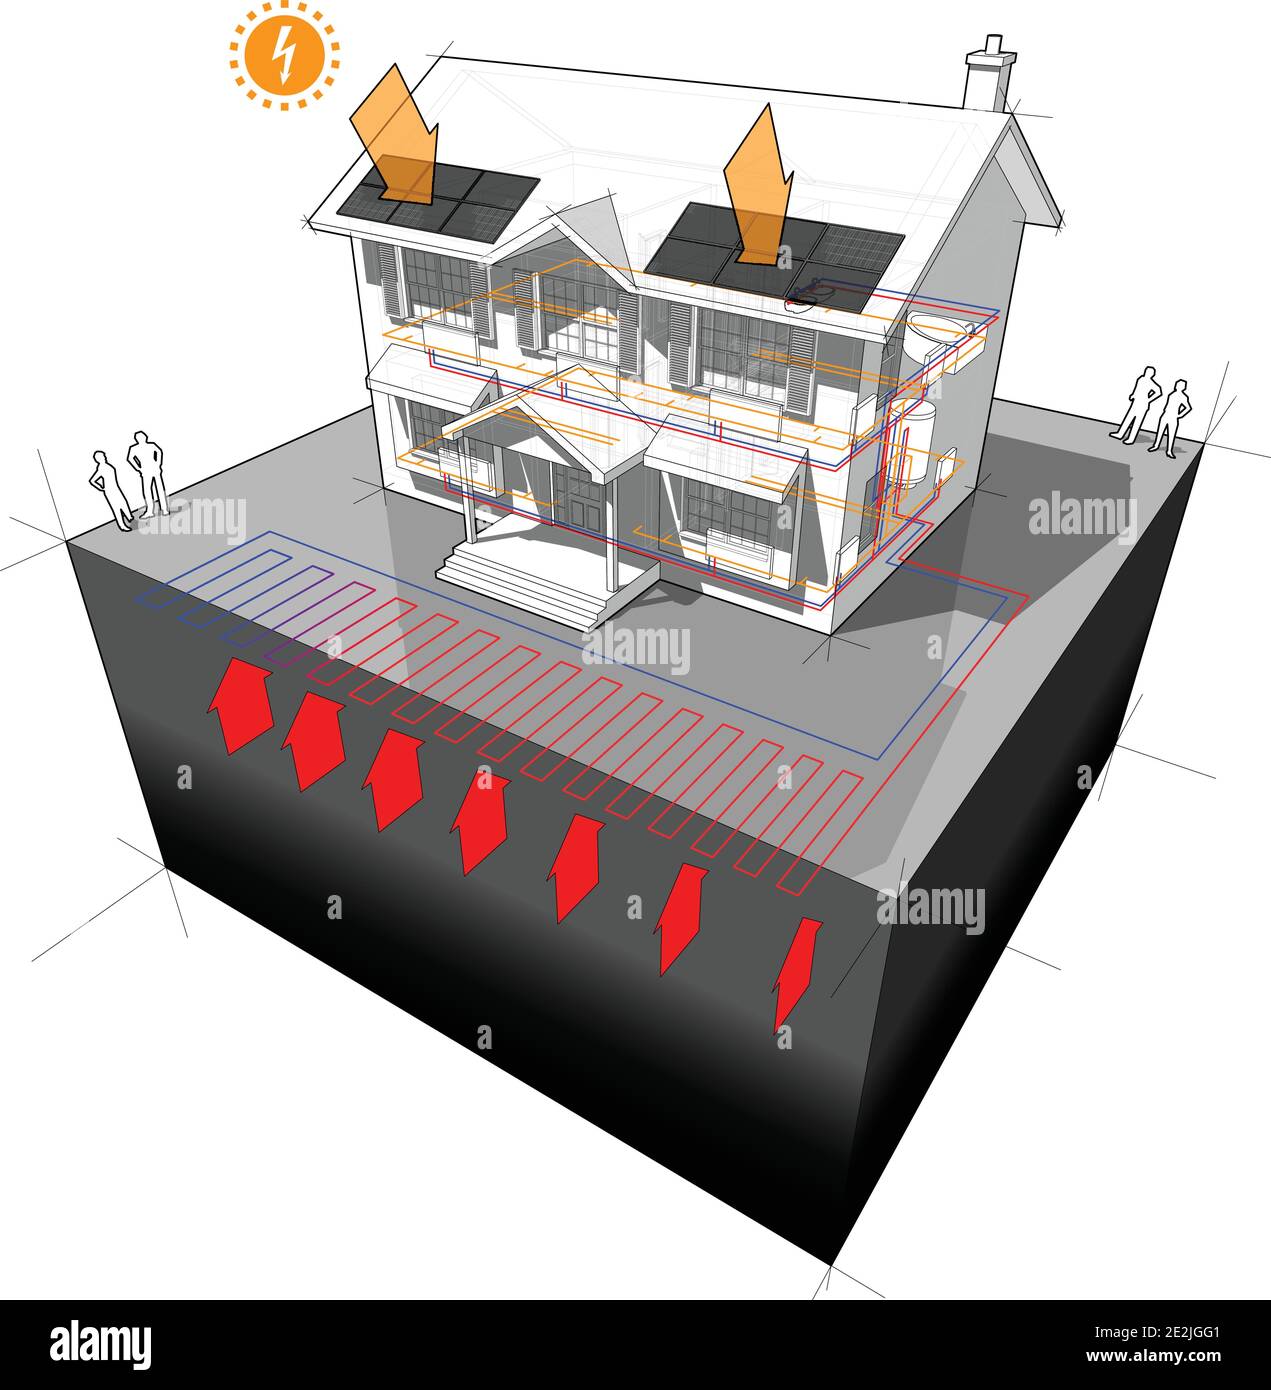 casa con pompa di calore sorgente di terra planare come fonte di energia per il riscaldamento con radiatori e pannelli fotovoltaici su tetto Illustrazione Vettoriale